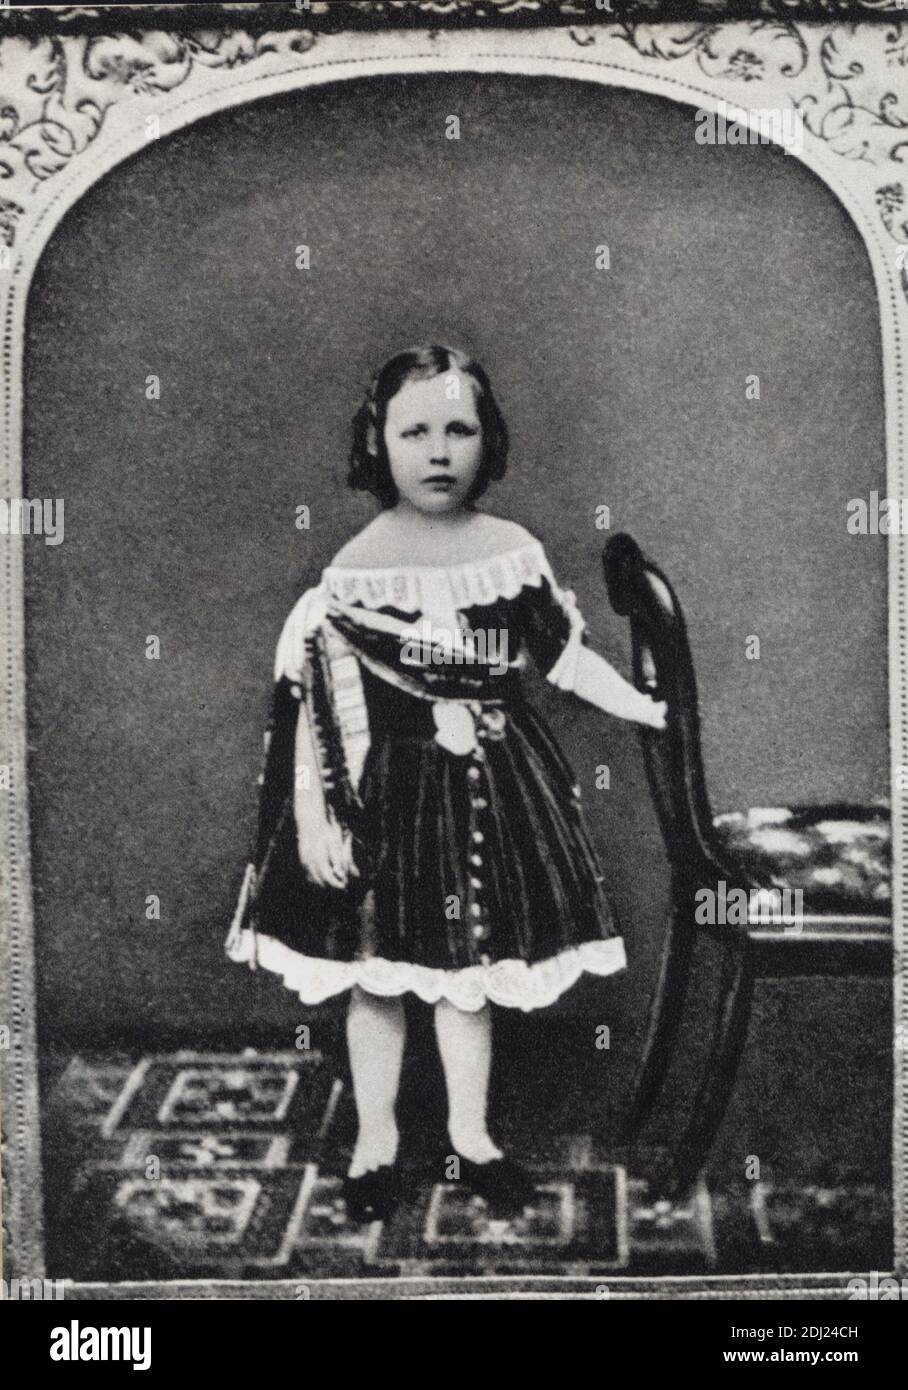 1856 , GREAT BRITAIN : The irish writer and dramatist OSCAR WILDE ( 1854 - 1900 ) when was a young little child   - SCRITTORE - LETTERATURA -  LITERATURE - POET - POETA - POESIA - DRAMMATURGO - playwriter - play-writer - TEATRO - THEATER - POETRY  - personalità celebrità da giovani bambini giovane bambino  -  celebrity personality celebrities celebrities  when was young boy   - DANDY - GAY -  LGBT - HOMOSEXUALITY - HOMOSEXUAL - omosessuale - omosessualità  ----   Archivio GBB Stock Photo